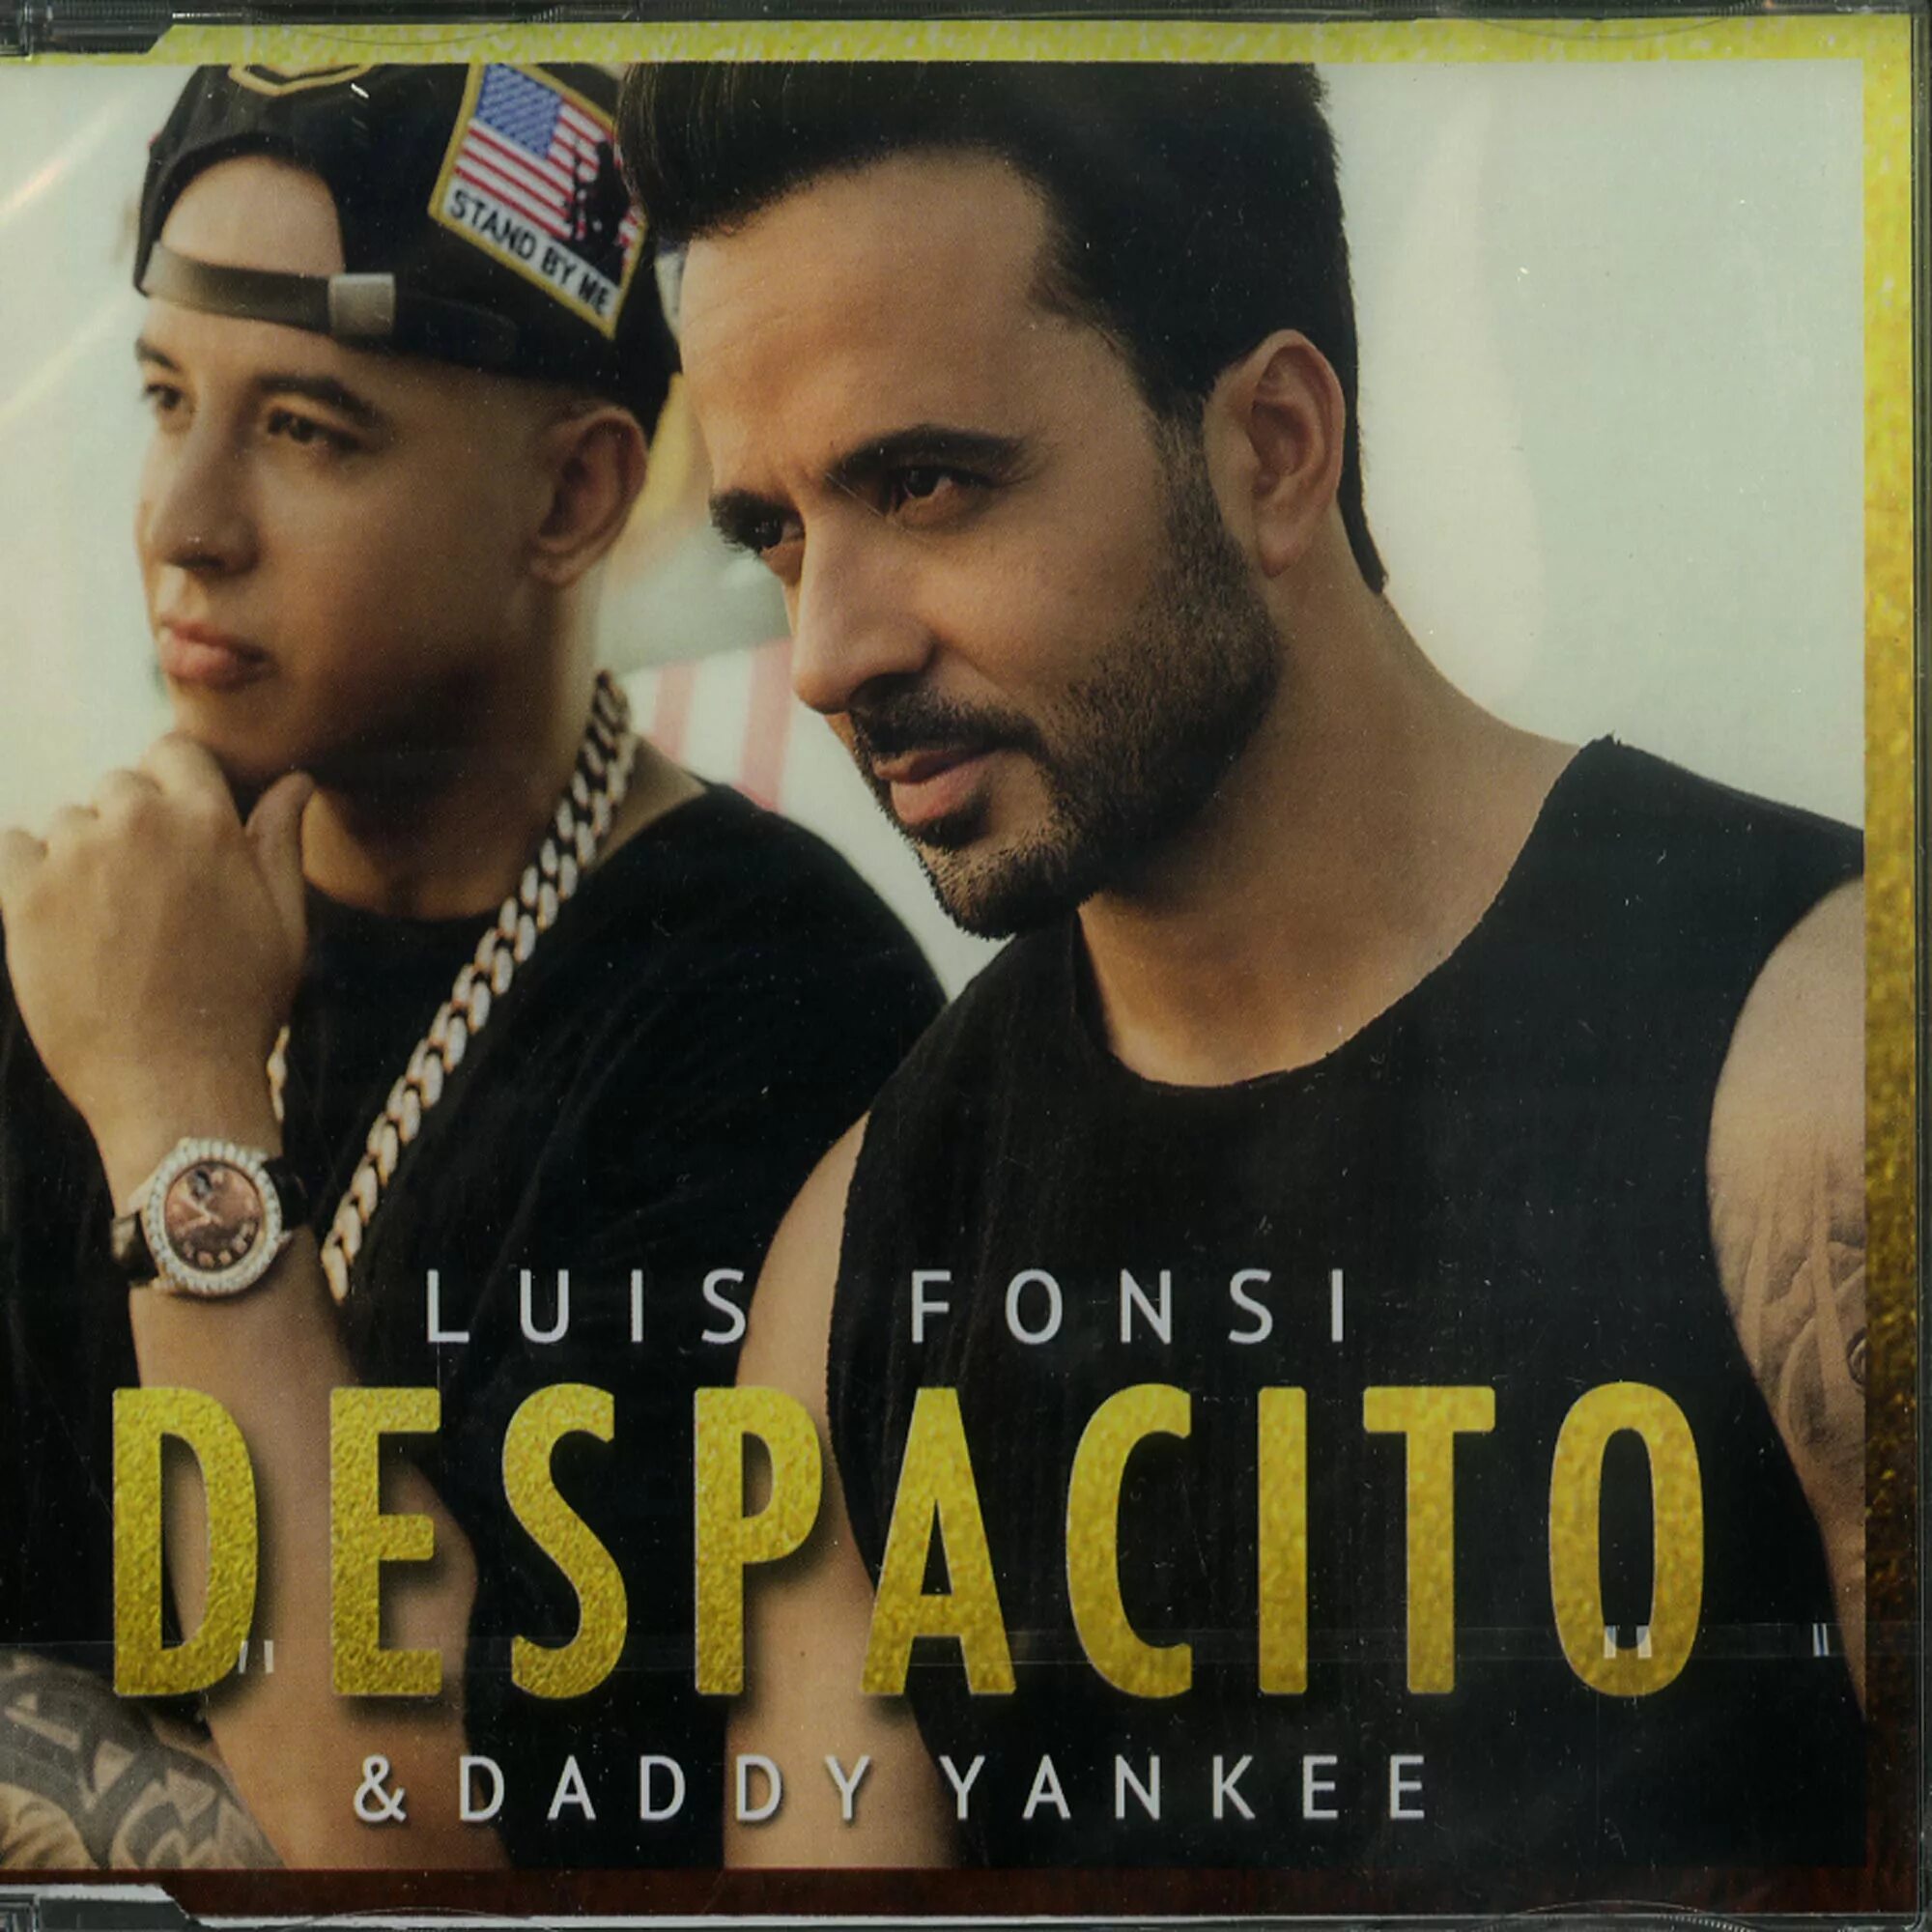 Луис Фонси Daddy Yankee. Луис Фонси -дадии Яанкее. Обложка Daddy Yankee, Luis Fonsi. Luis Fonsi - Despacito ft. Daddy Yankee.